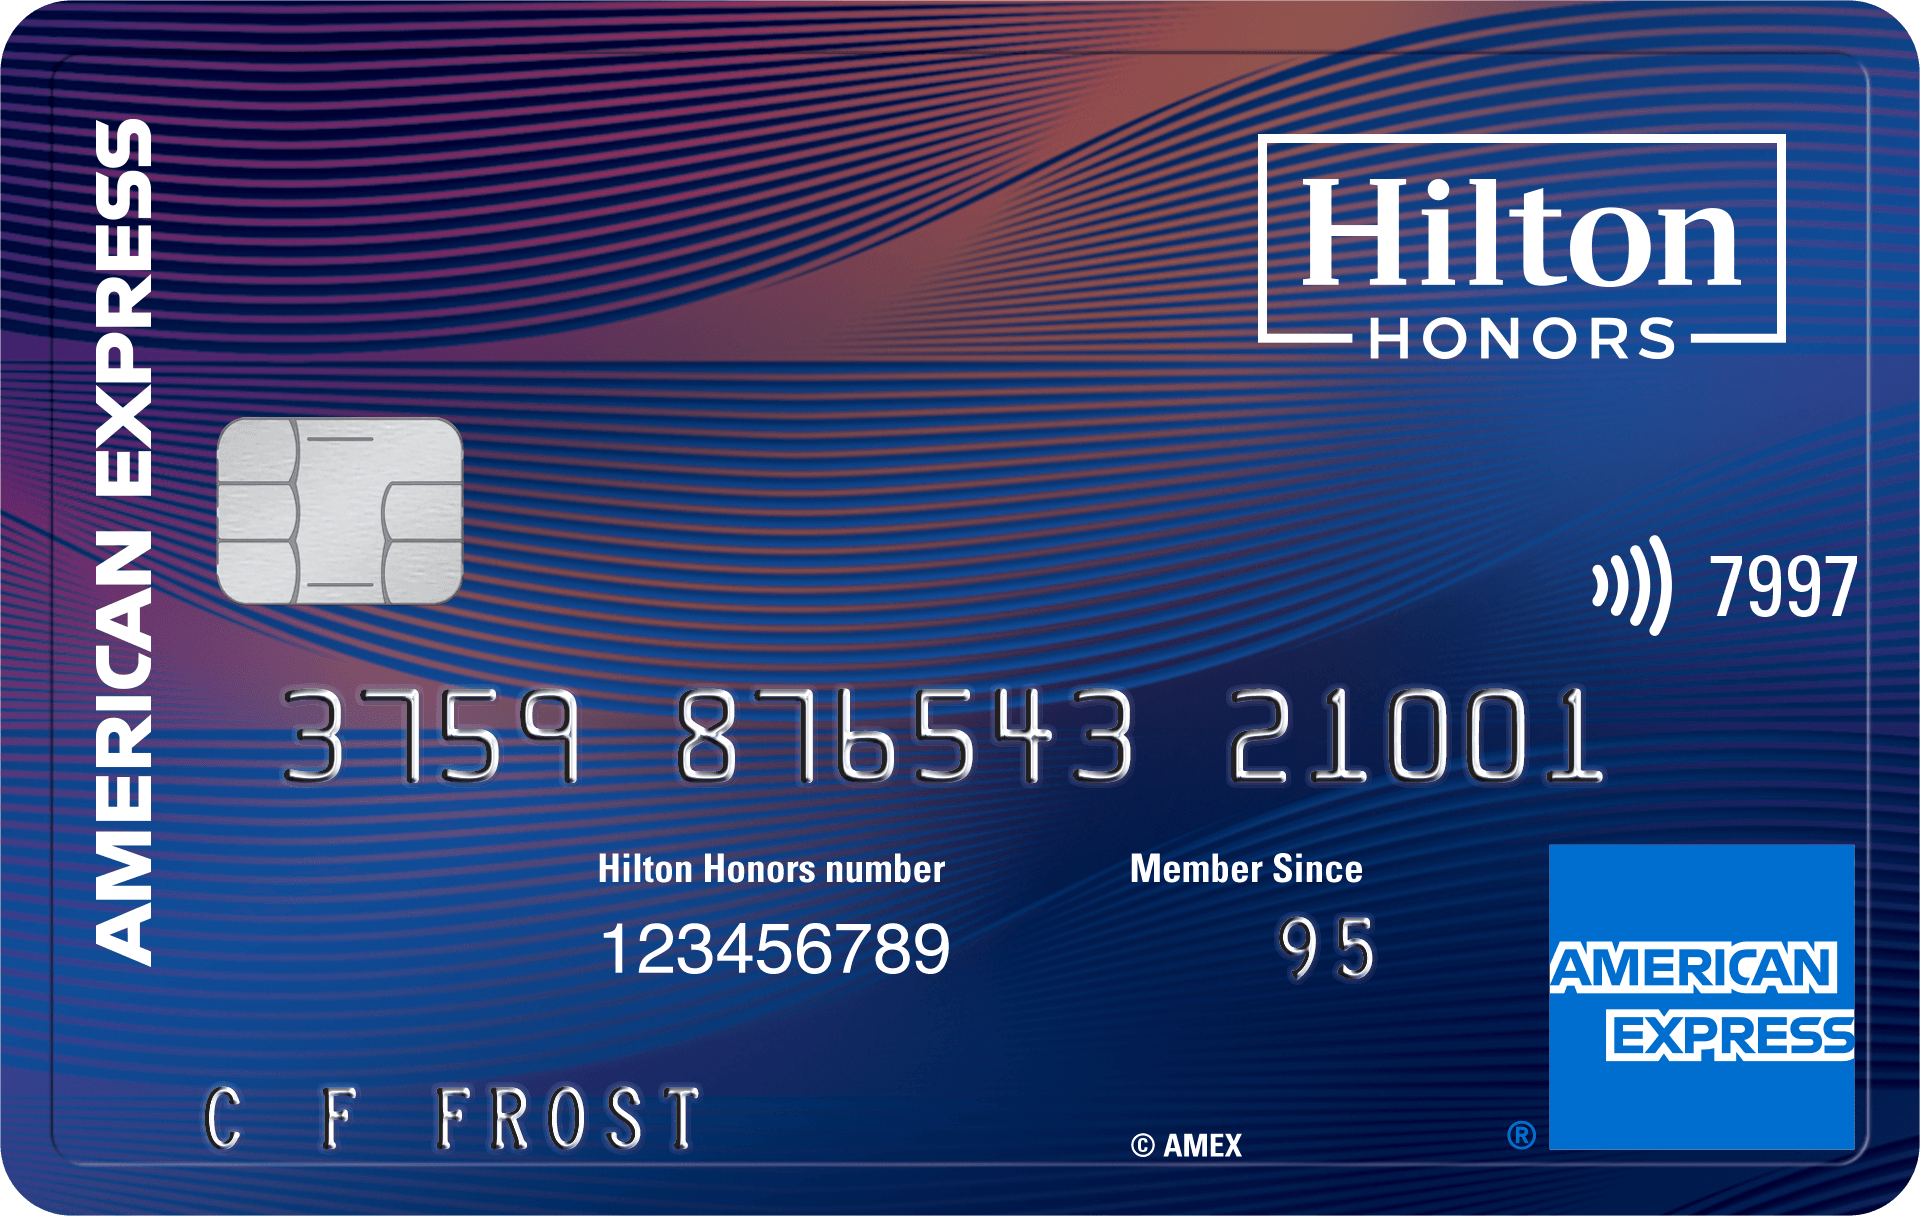 Hilton Honors Aspire Card habilitado para chip, sem contato para pagar